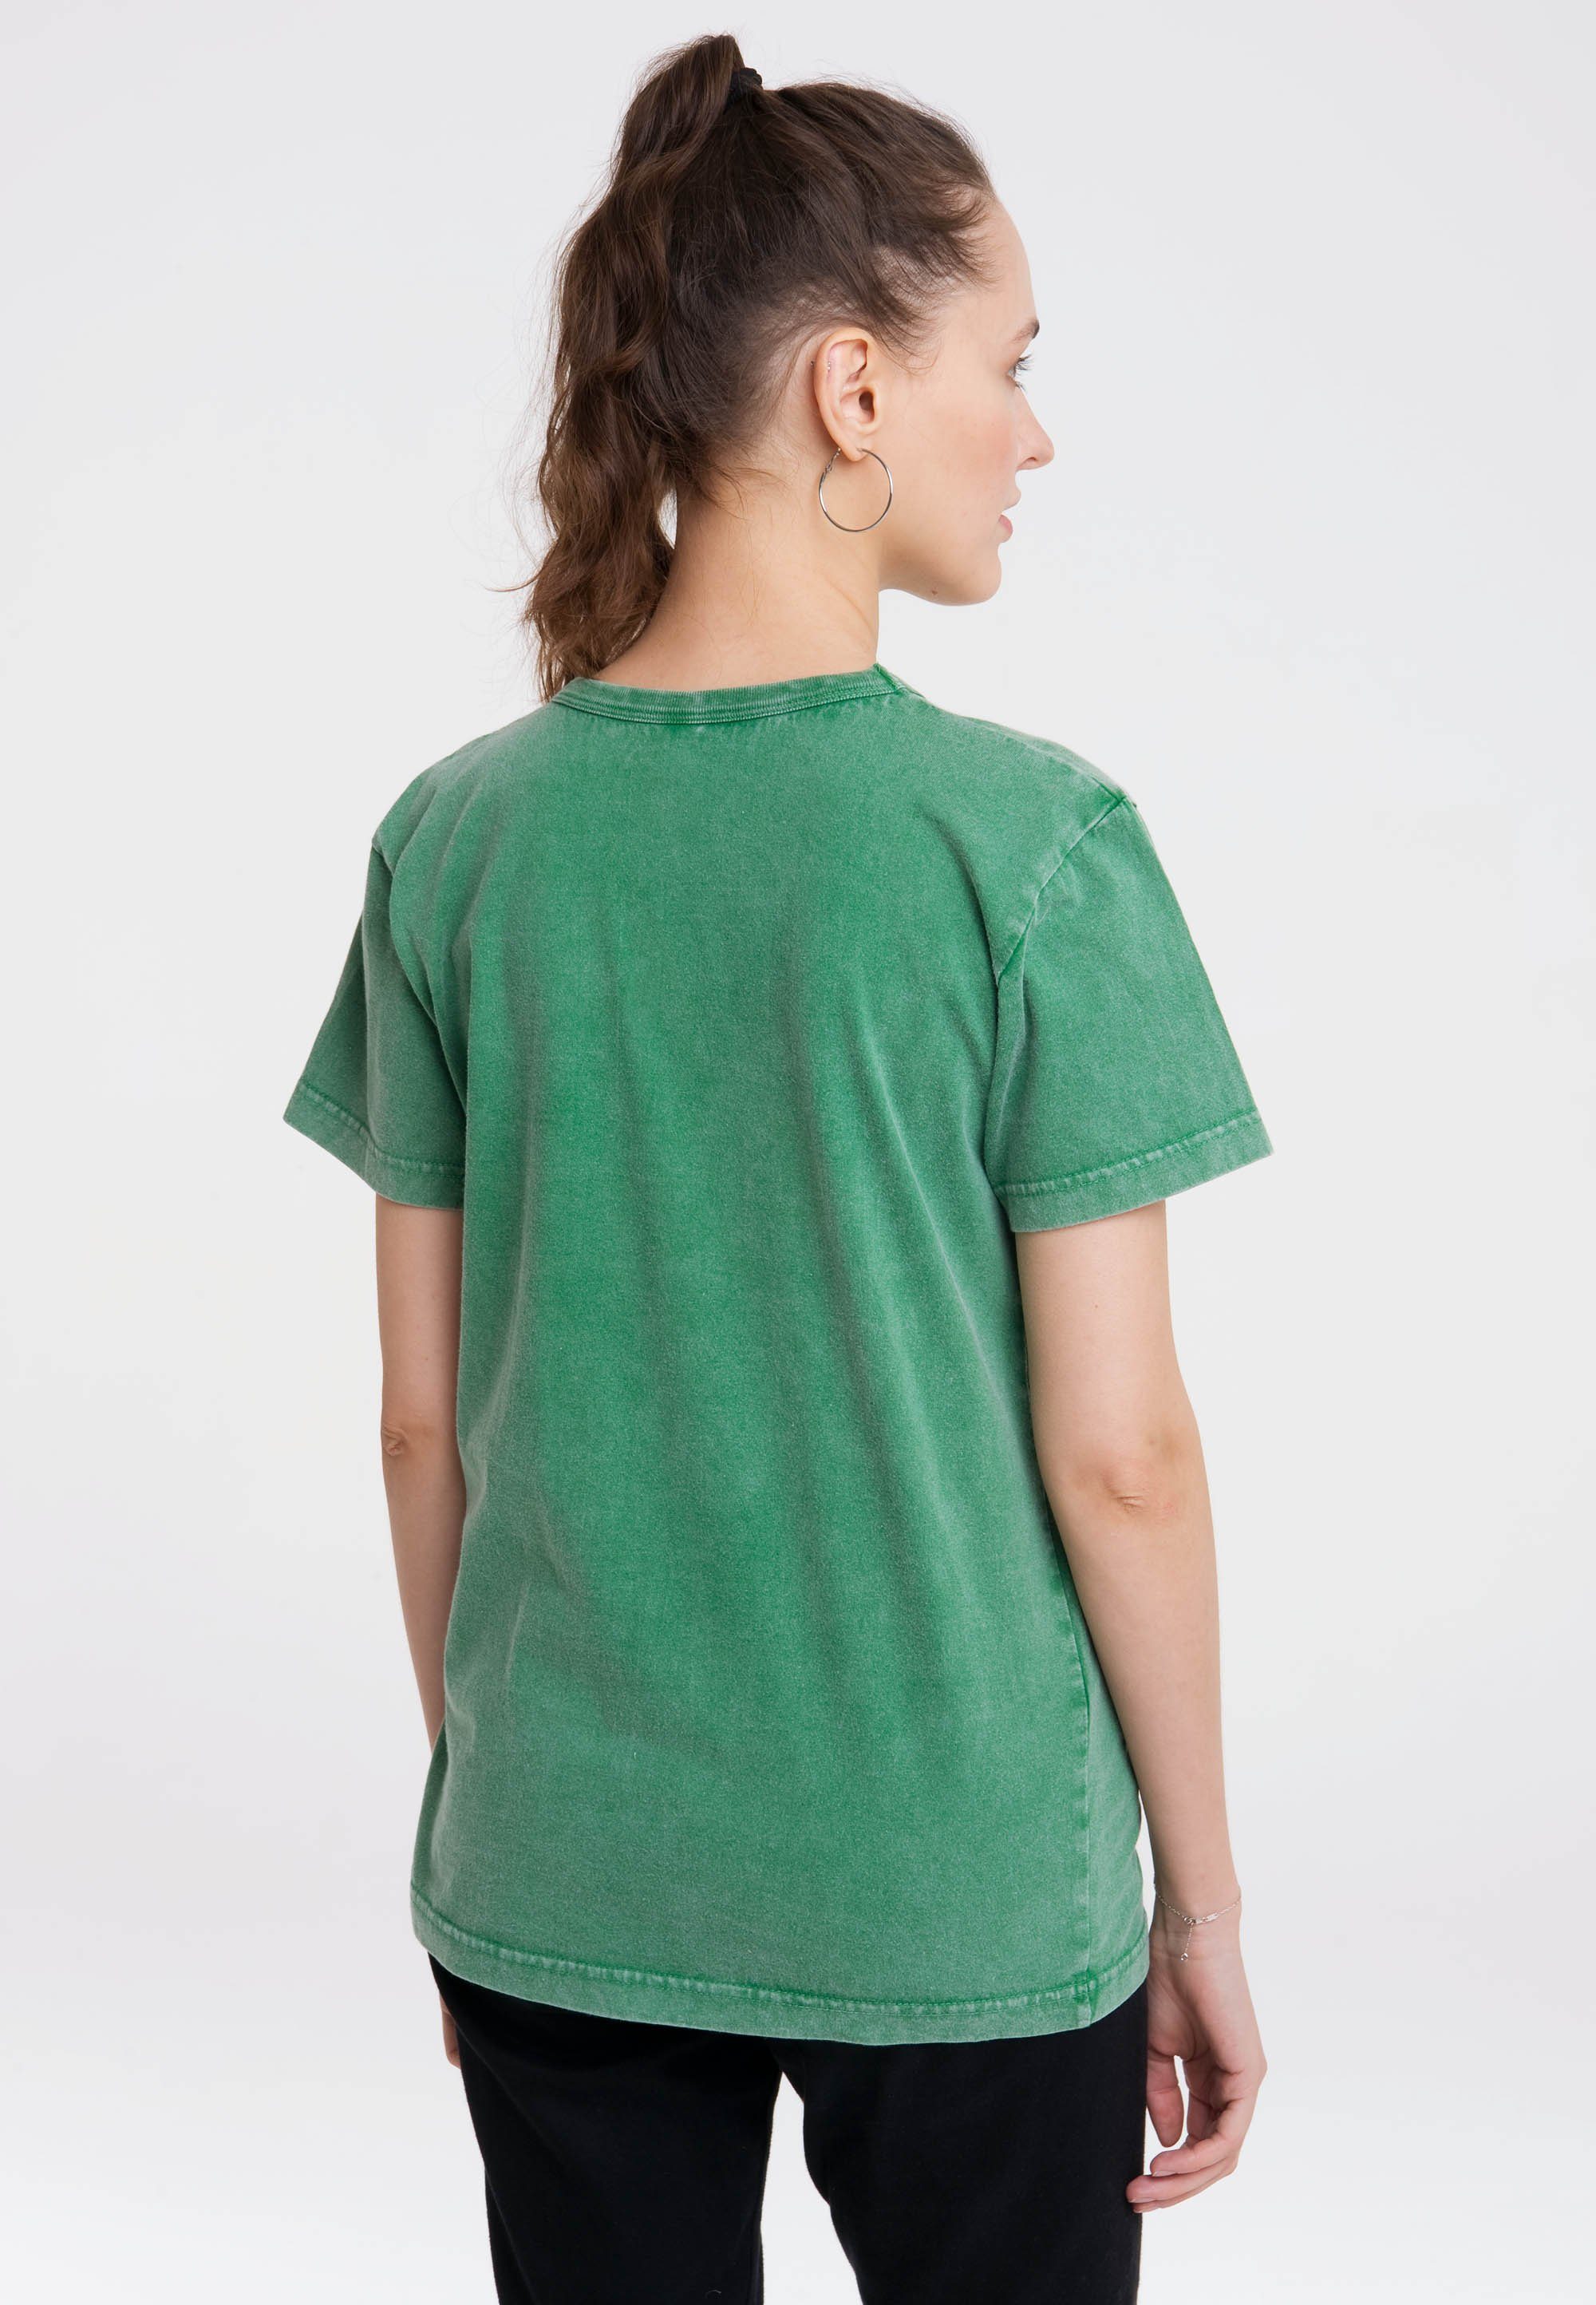 LOGOSHIRT T-Shirt Der kleine Maulwurf Print mit lizenziertem grün